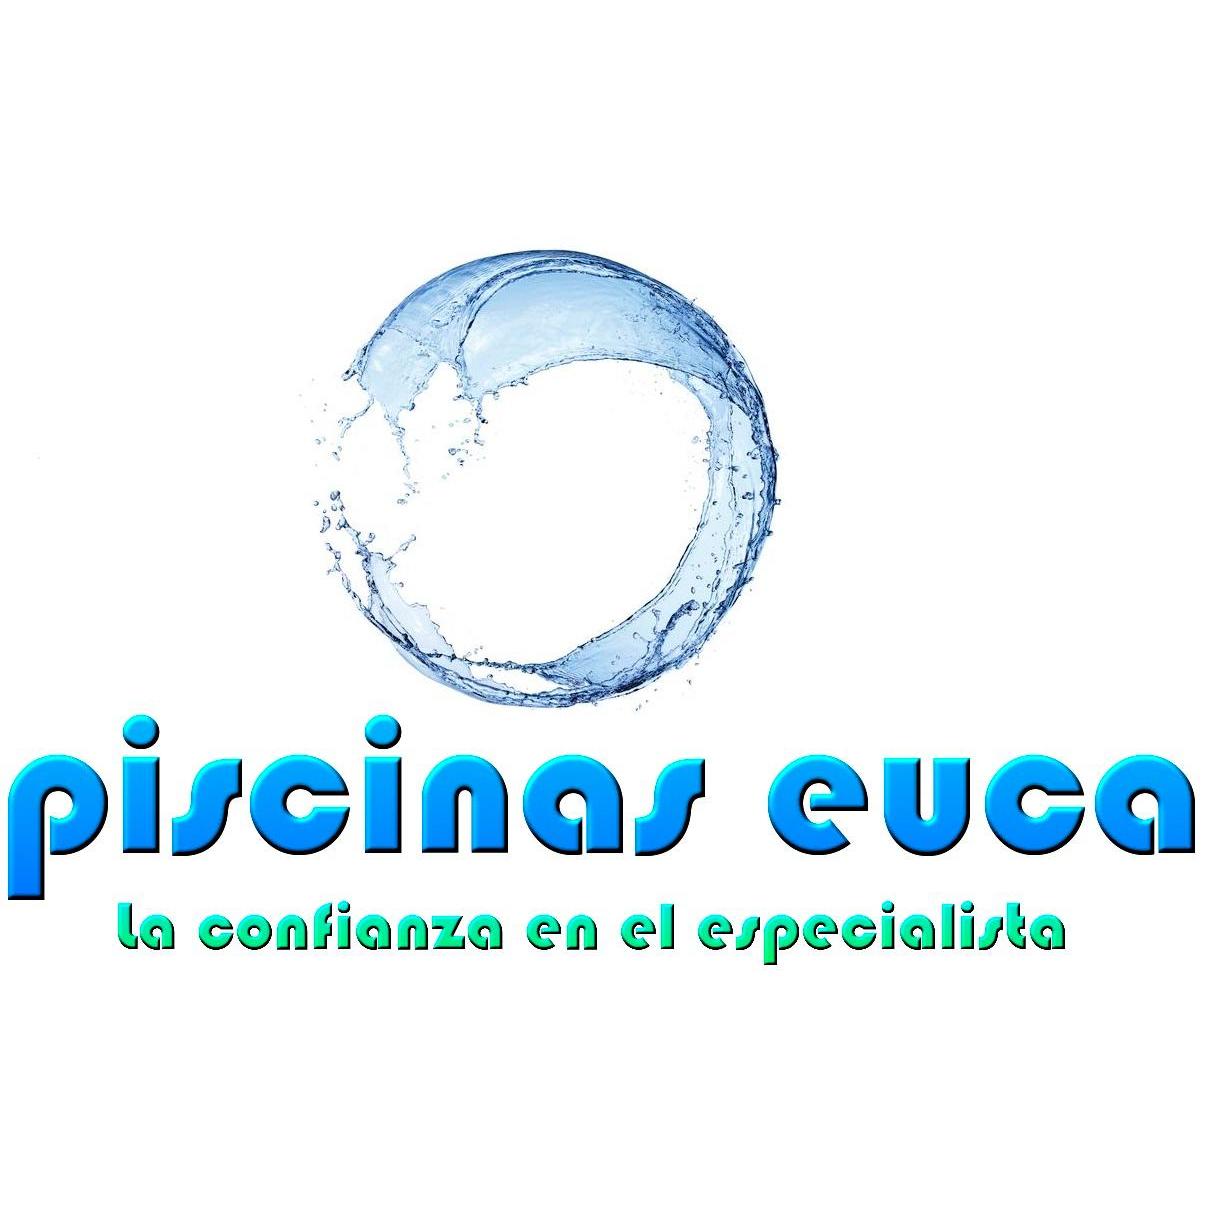 Piscinas Euca Logo